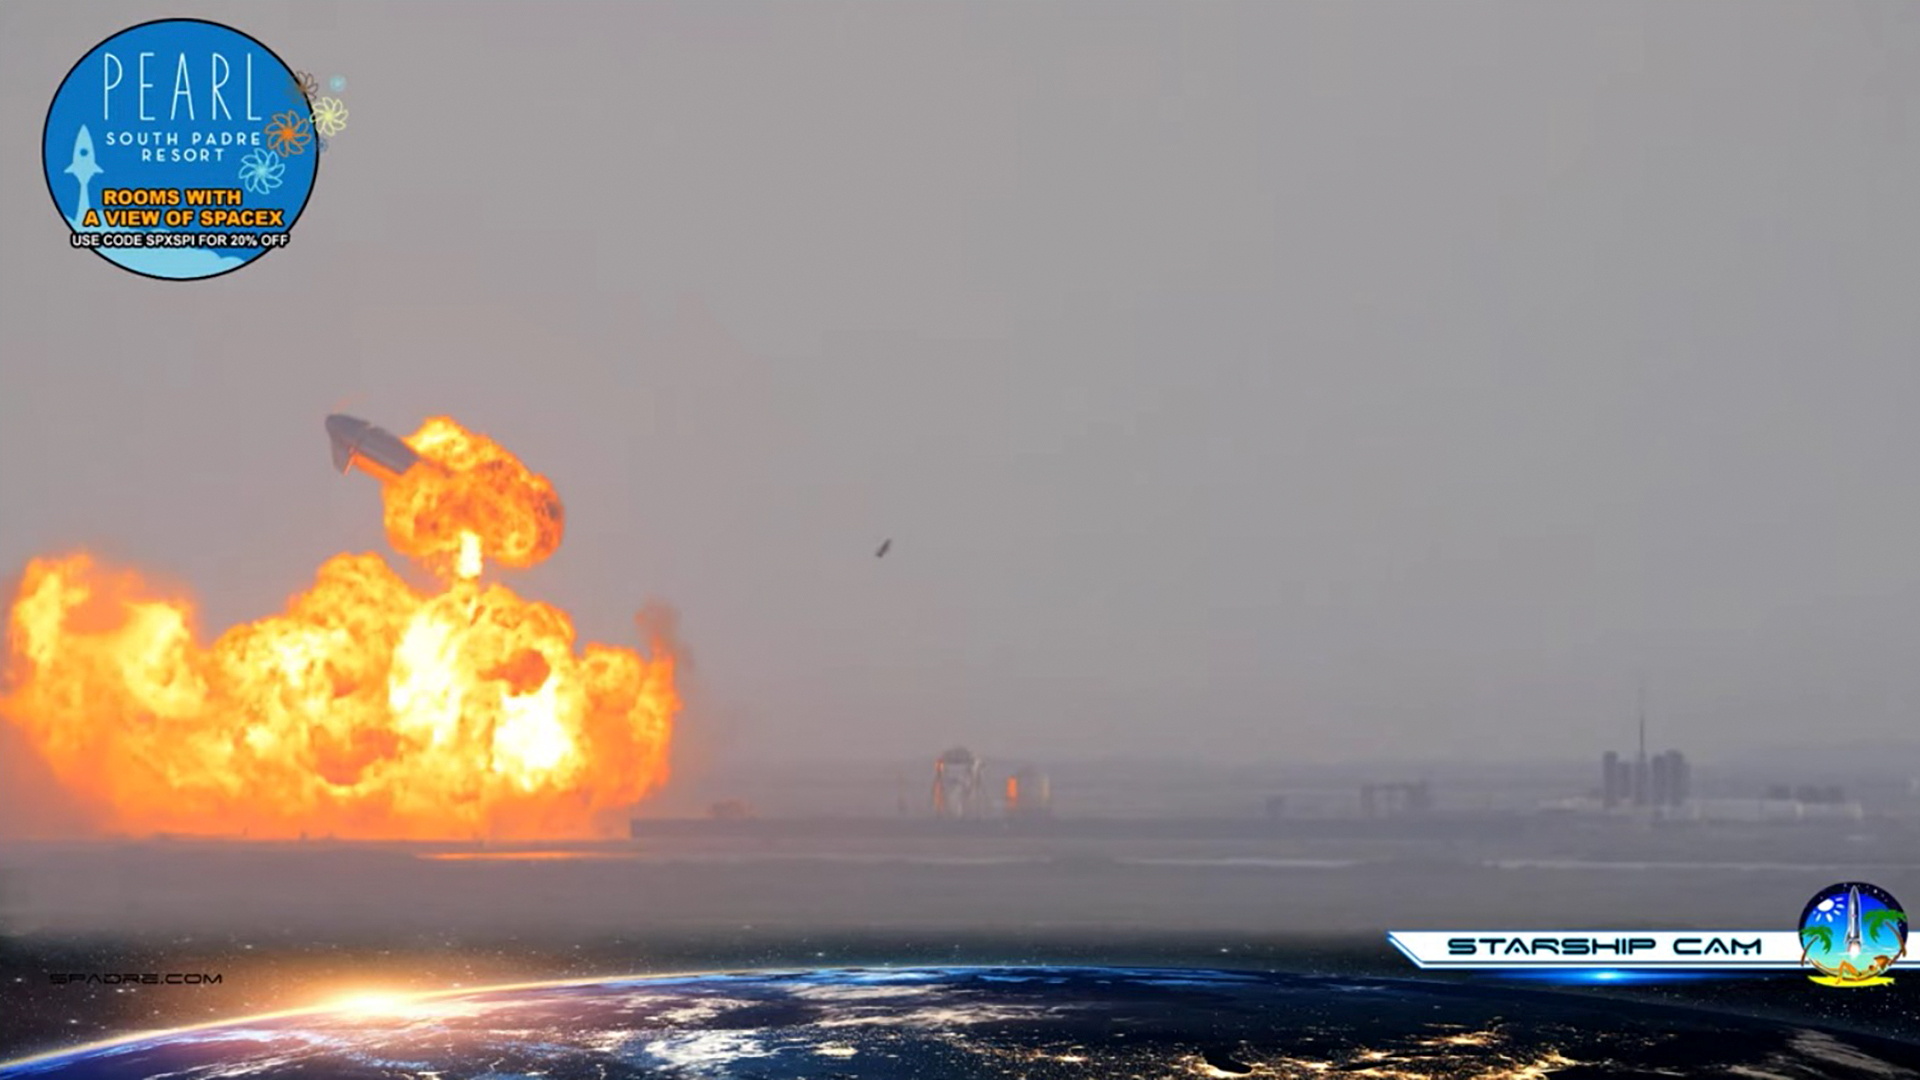 Le prototype Starship de SpaceX réussit son atterrissage, puis explose